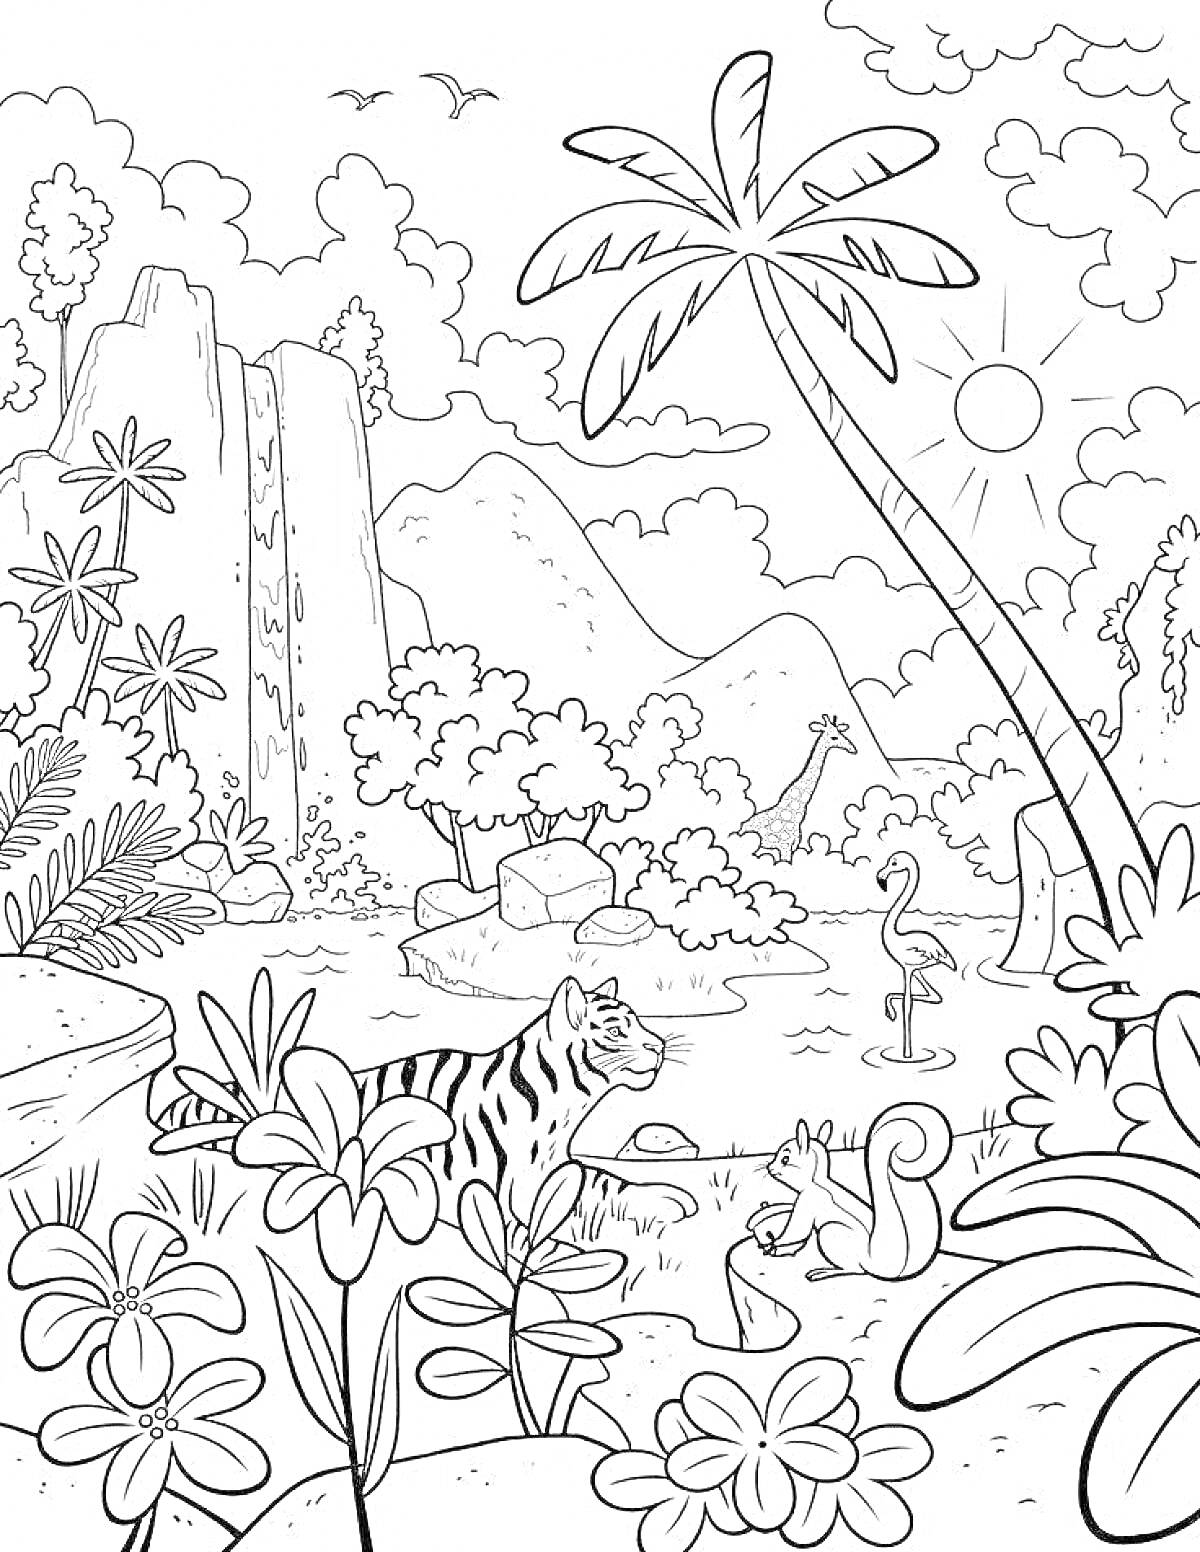 На раскраске изображено: Природа, Тропический лес, Тигр, Белка, Жираф, Водопад, Солнце, Горы, Кусты, Цветы, Пальмы, Птица